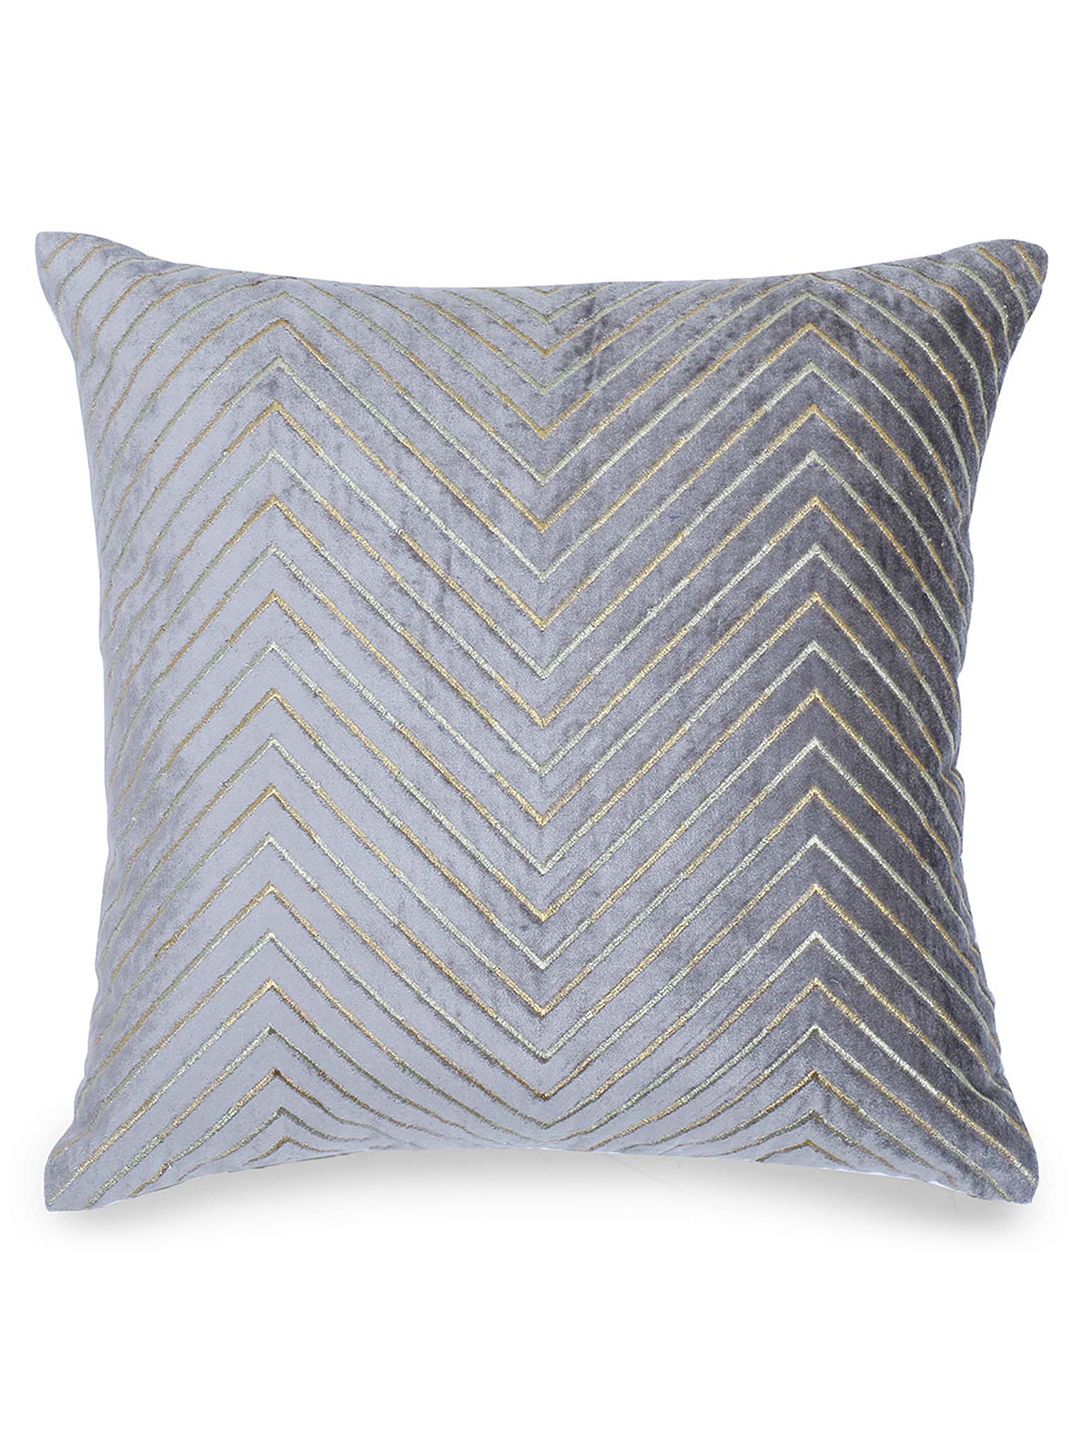 haus & kinder Grey & Cream-Coloured zari chevron Geometric Square Cushion Cover Price in India